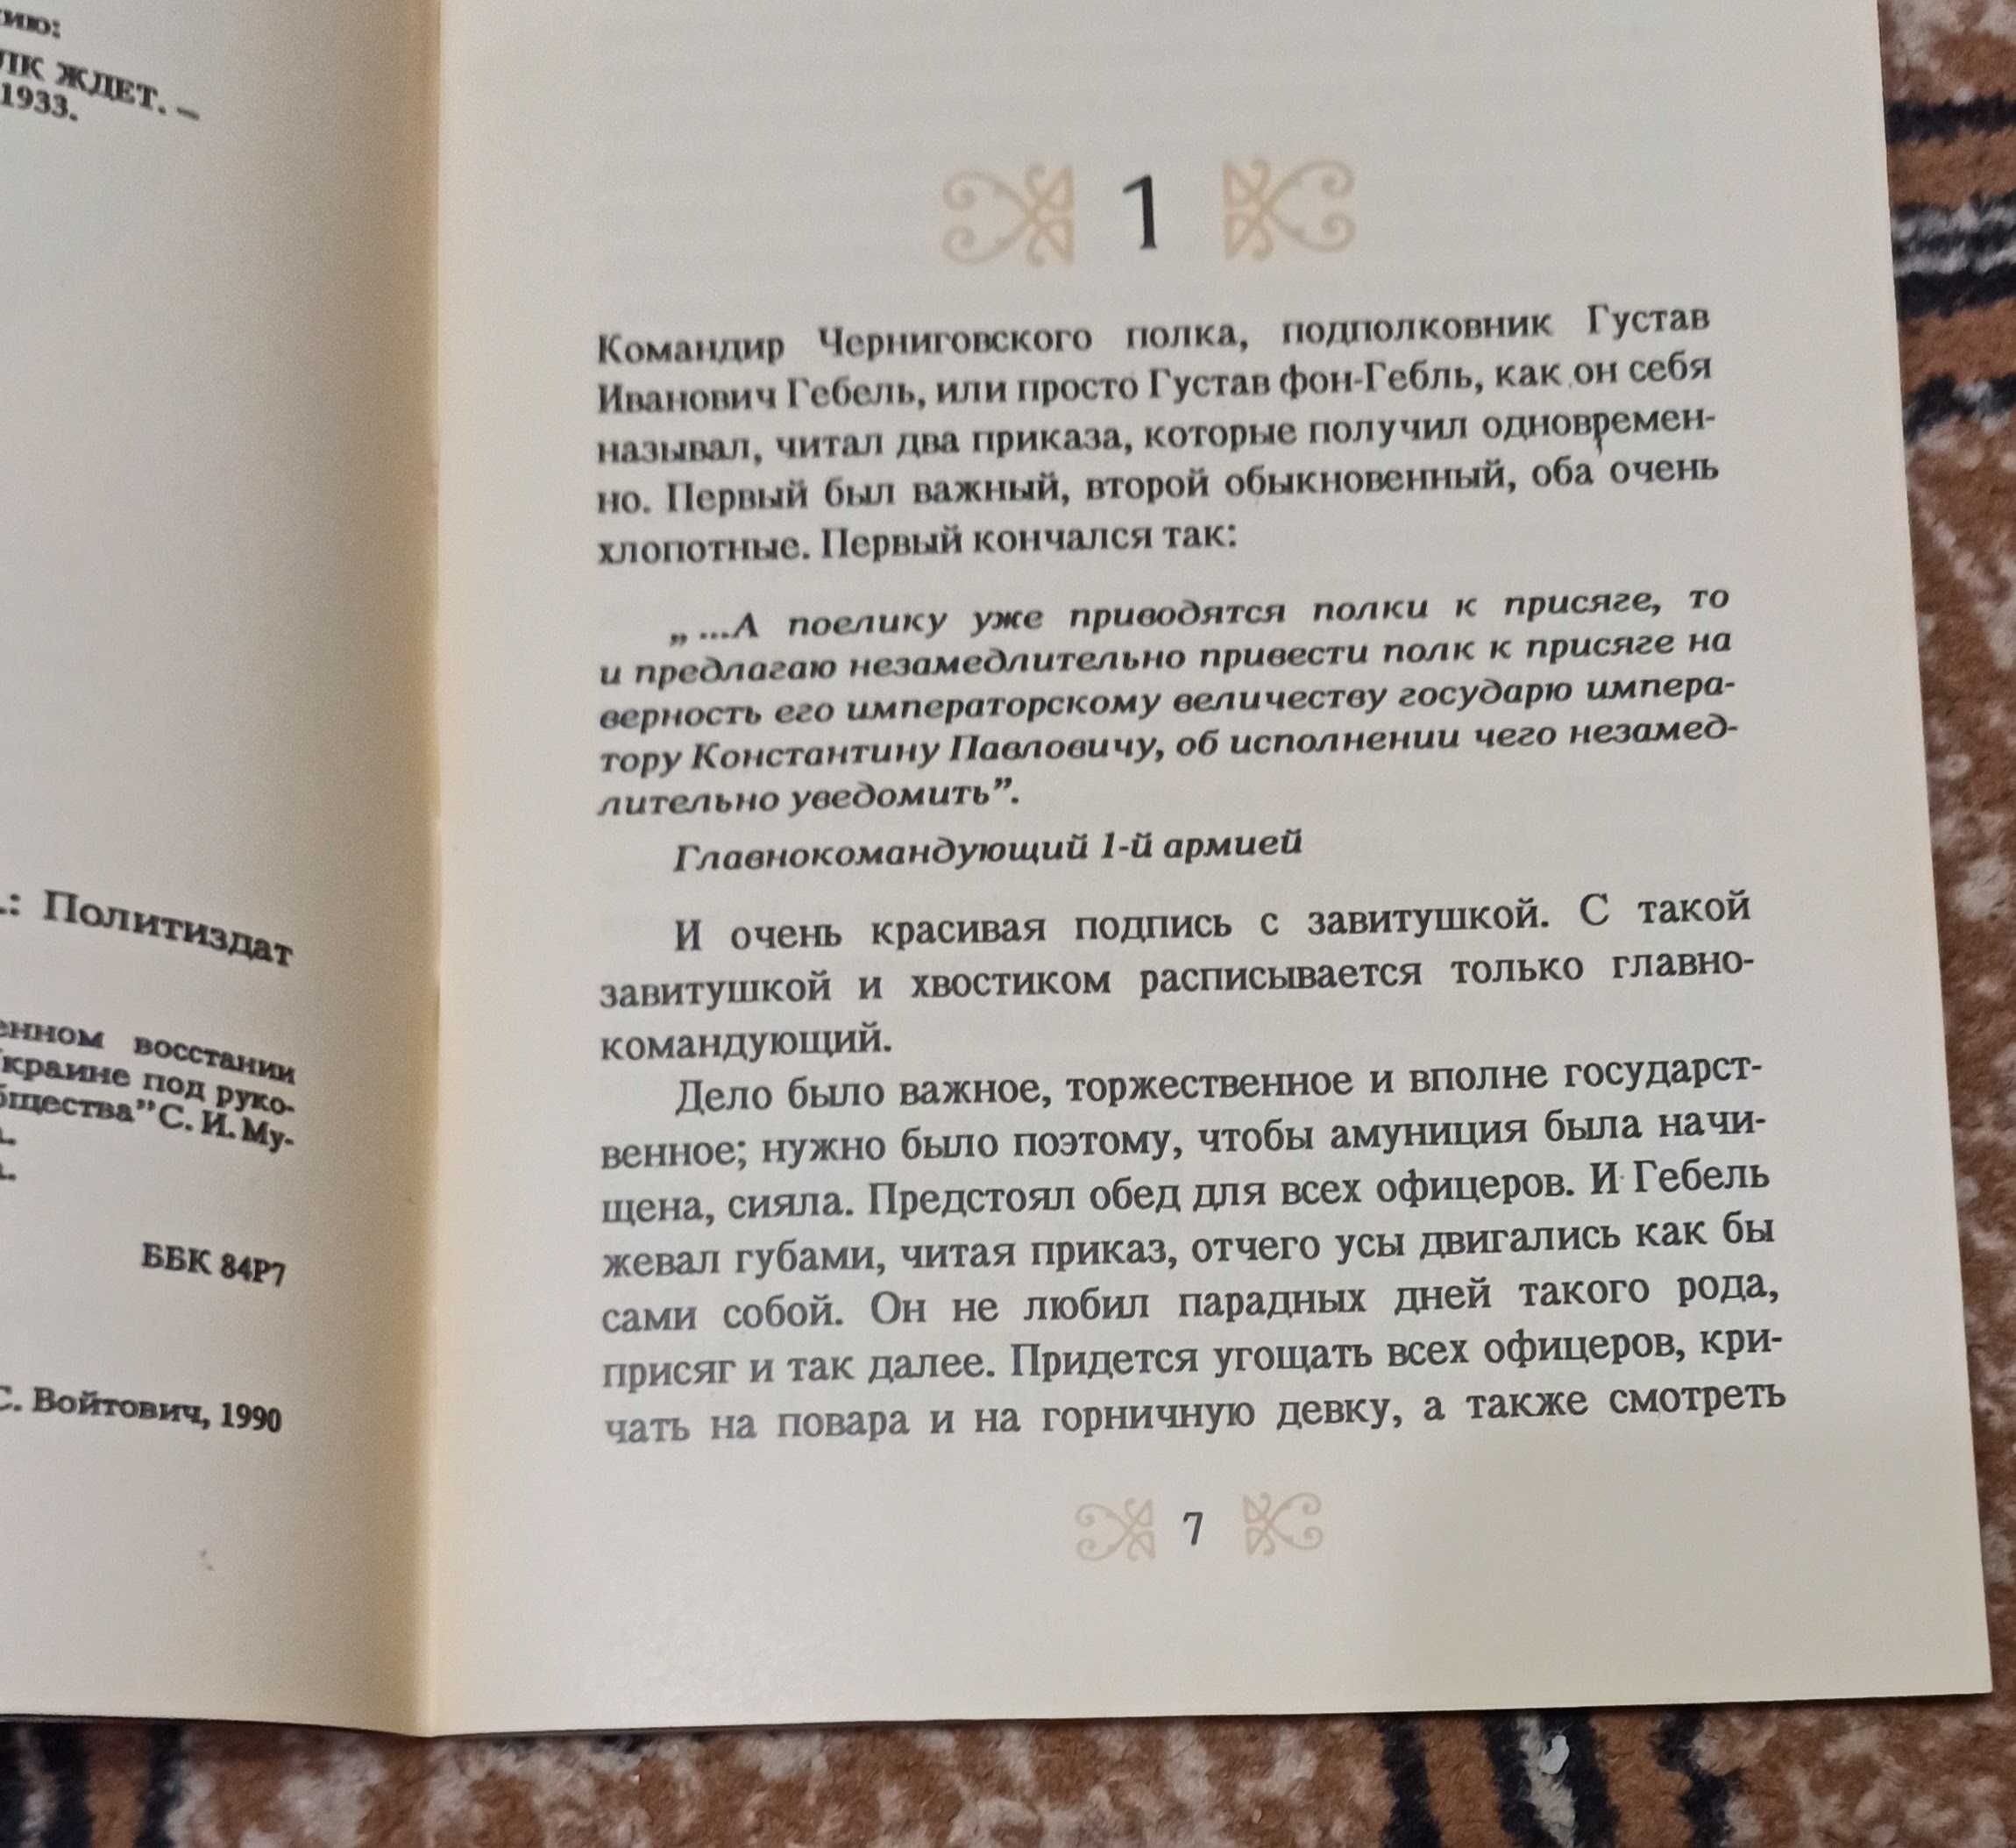 Книга Юрий Тынянов "Черниговский полк ждет"